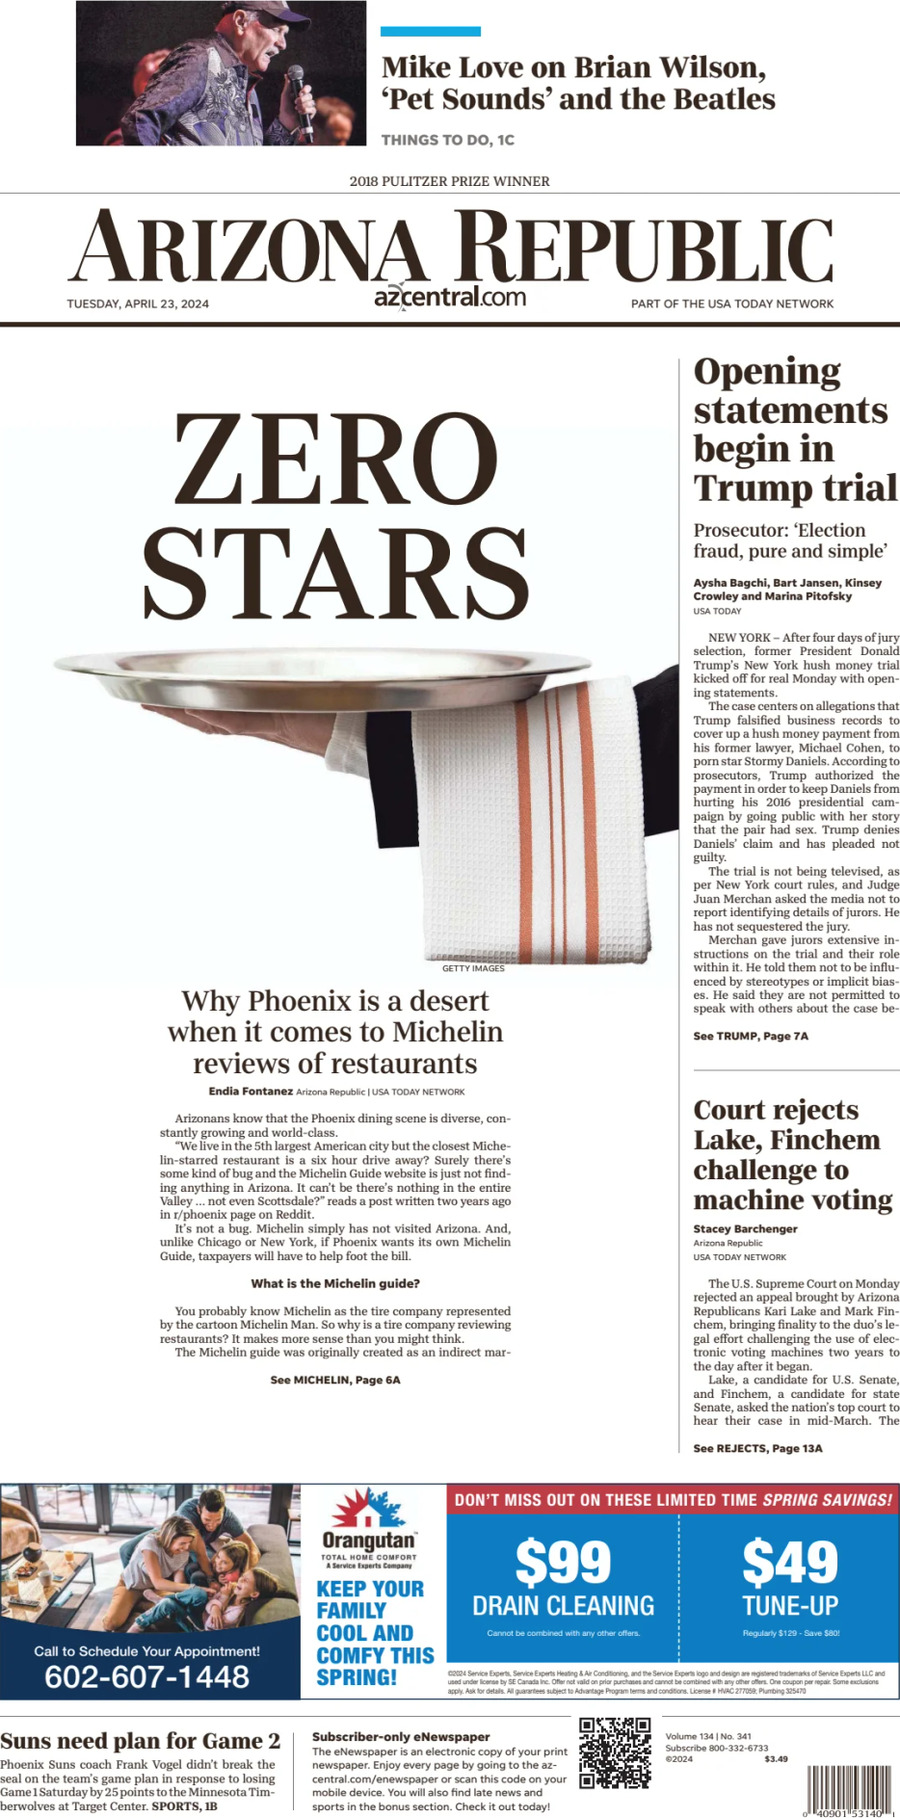 The Arizona Republic - Cover - 04/23/2024